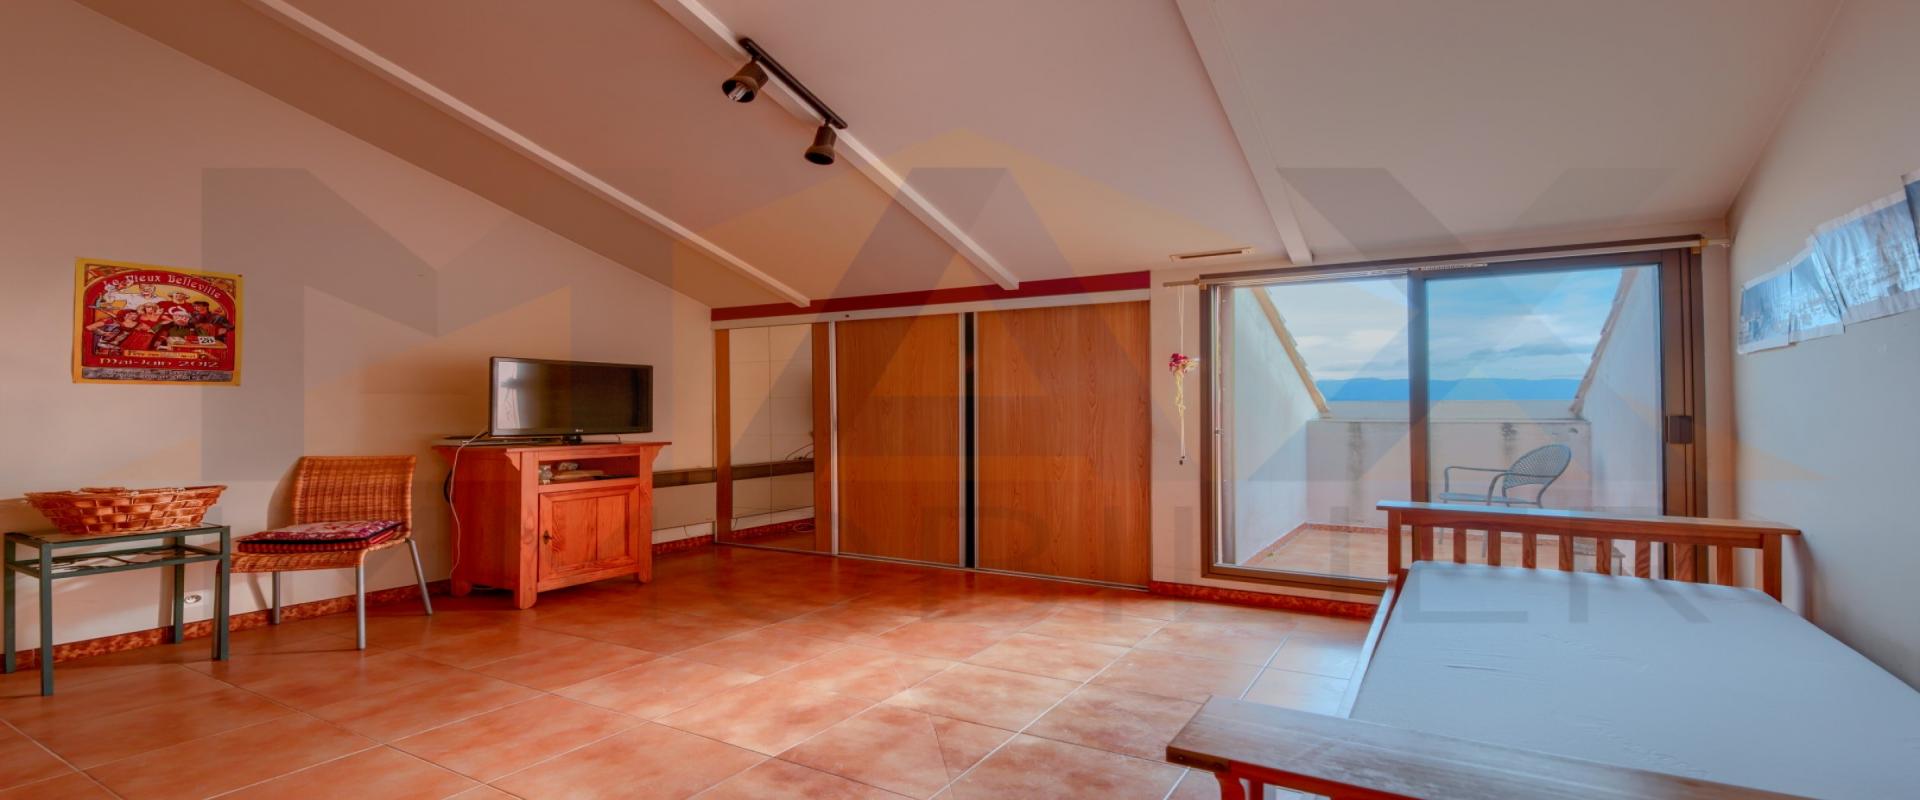 En Corse, à Ajaccio, place Miot, un studio de 25 m² au dernier étage avec vue mer. 